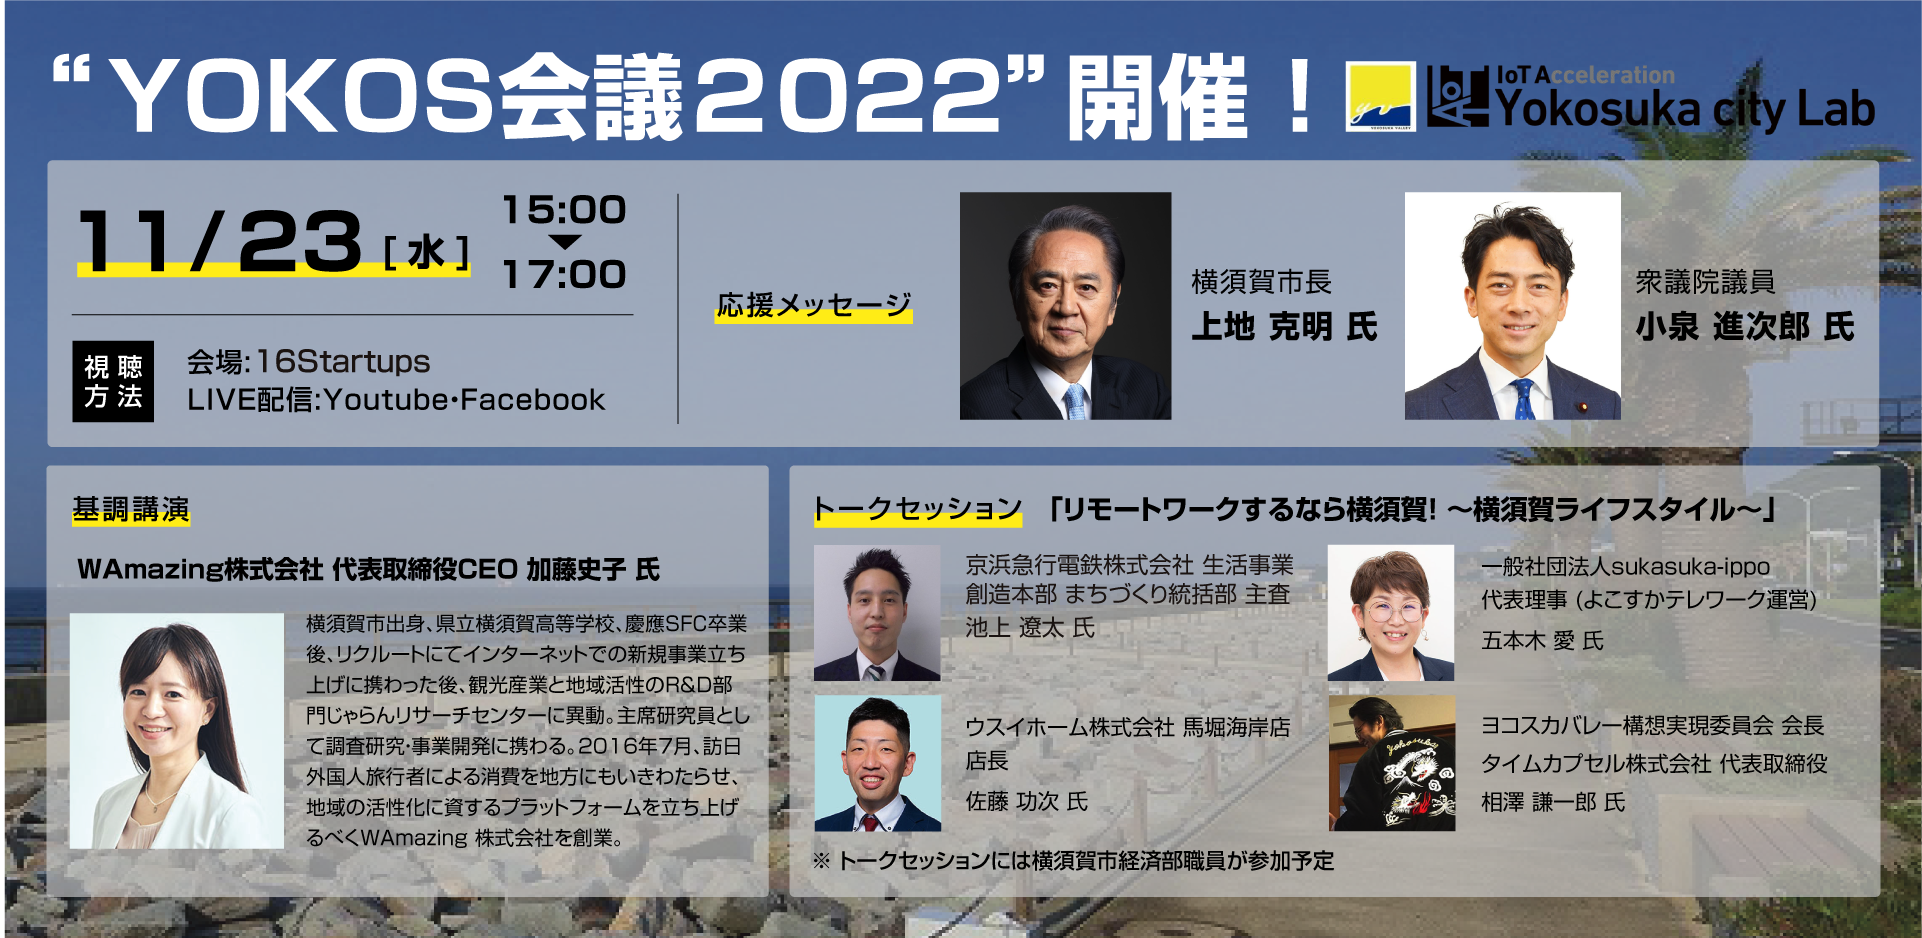 「YOKOS会議2022」会場変更のお知らせ